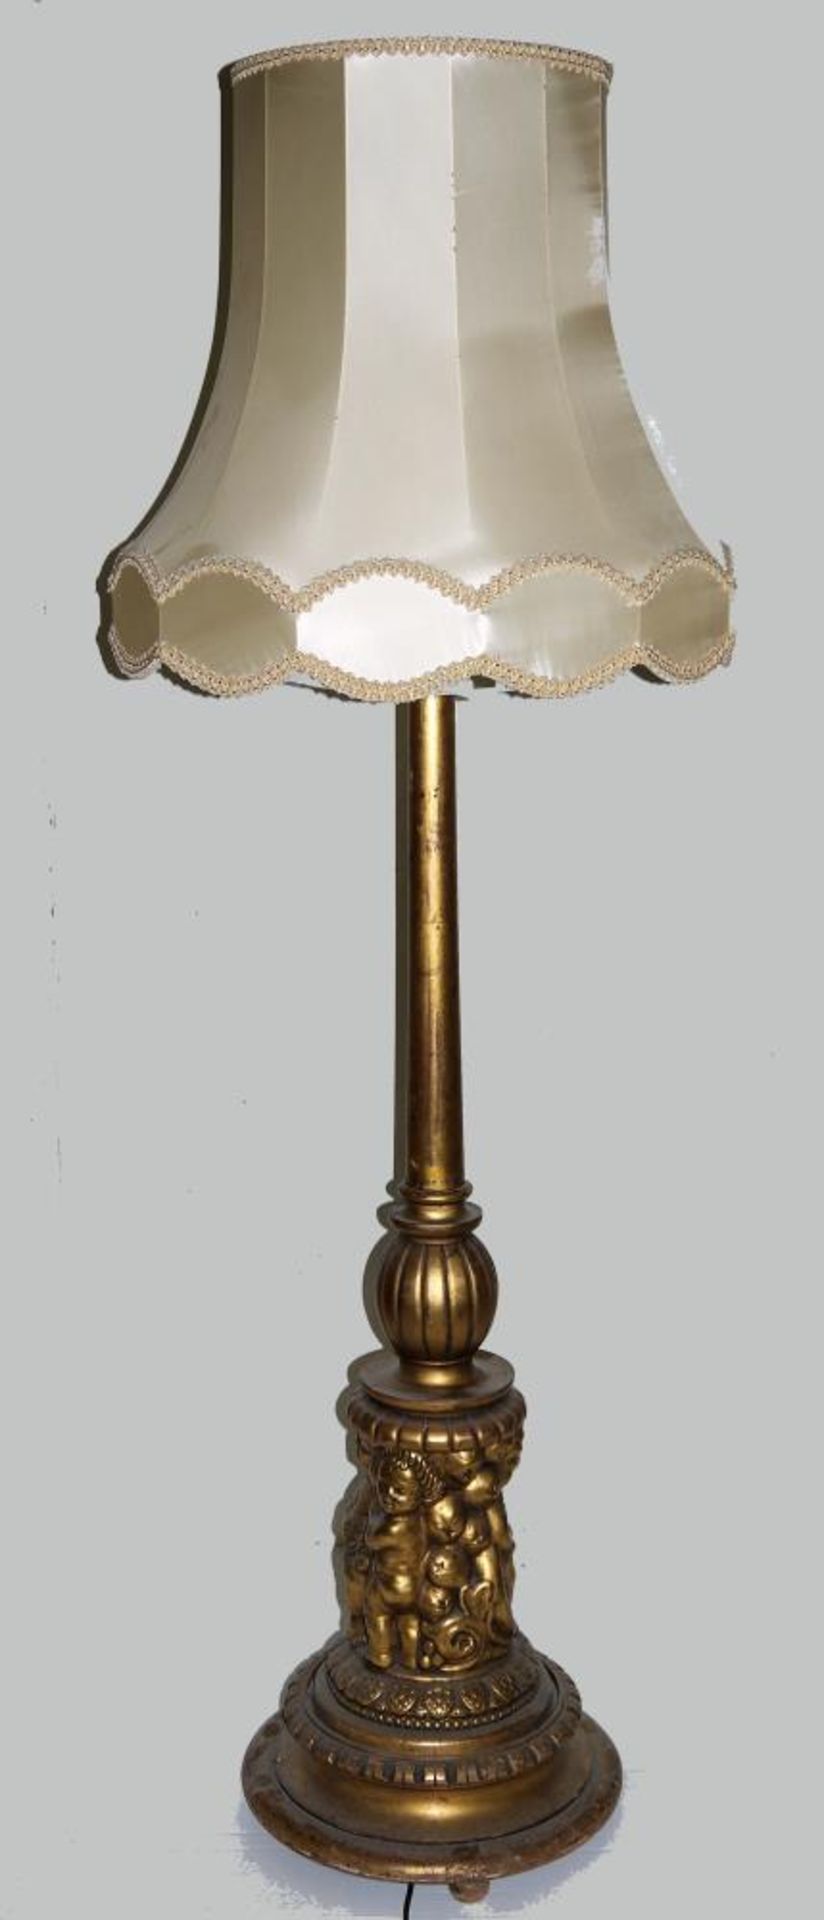 Standlampe um 1930 Holz, vergoldet, profilierter Schaft mit Putten im Relief auf profilierter